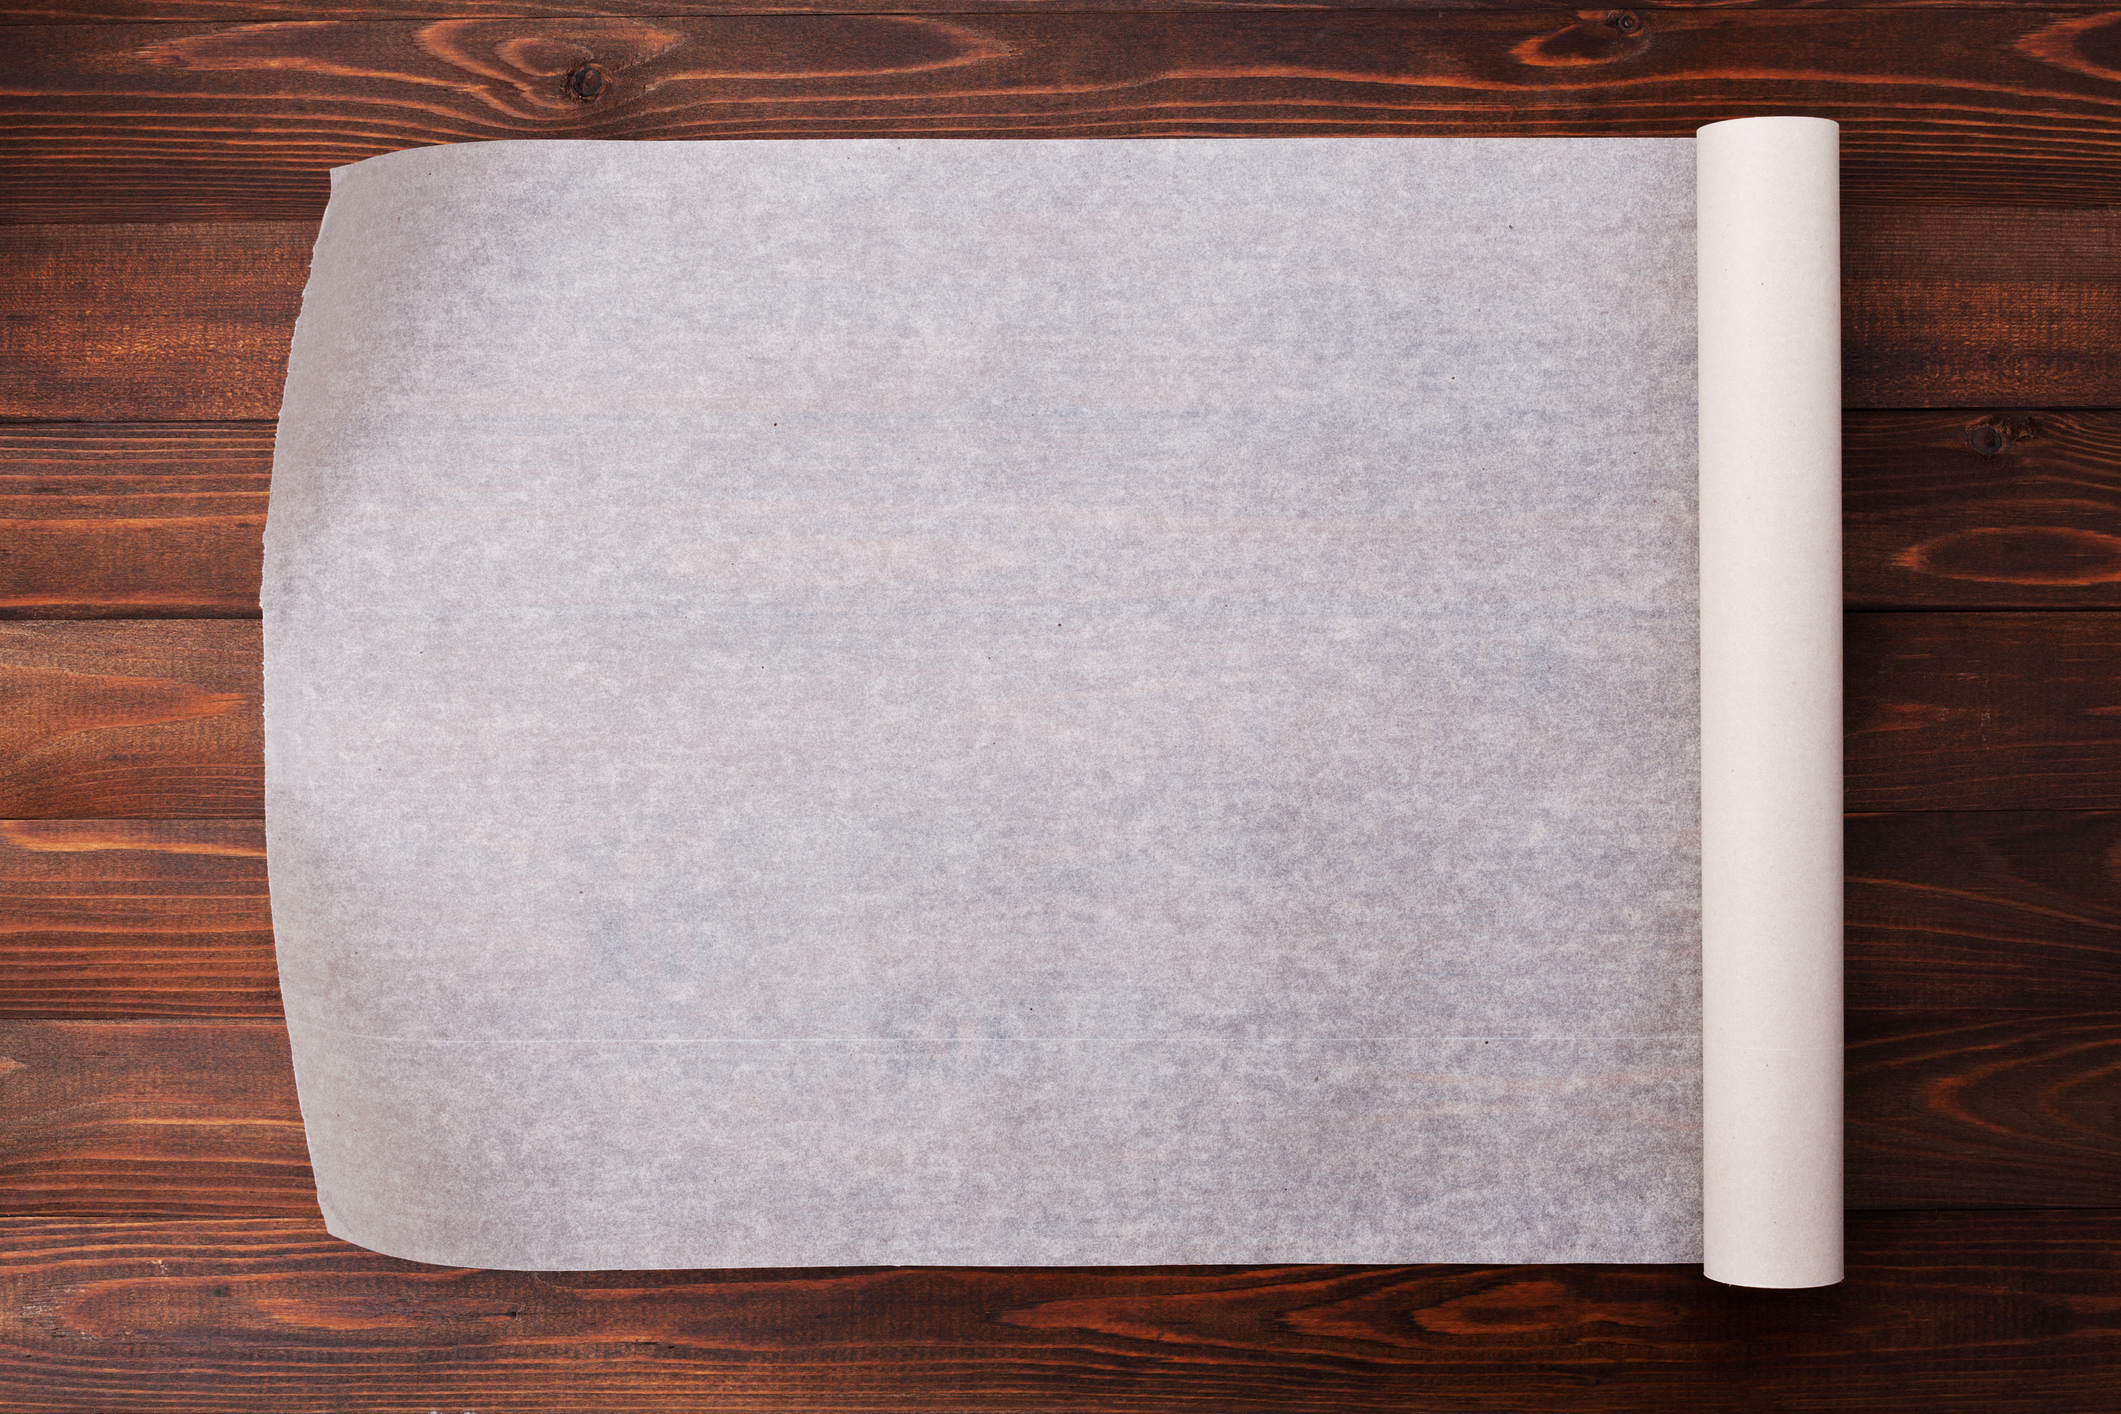  ઘરે ચર્મપત્ર કાગળનો ઉપયોગ કરવાની 15 આશ્ચર્યજનક રીતો